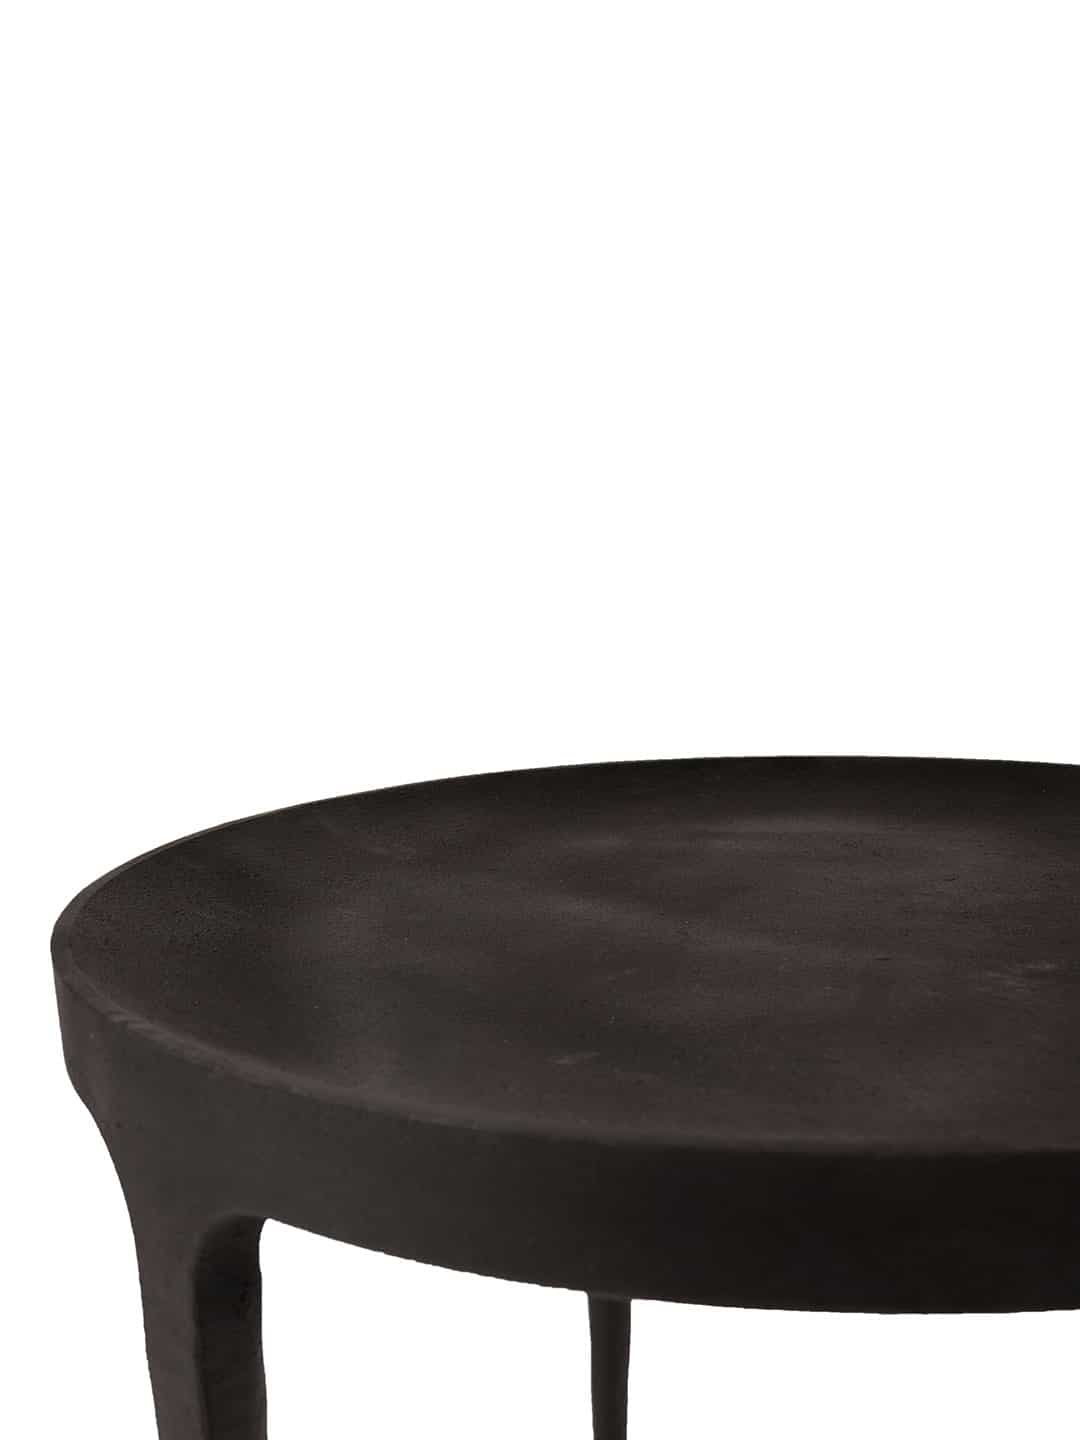 Стильный журнальный стол NORR11 Ghost темно-коричневого цвета